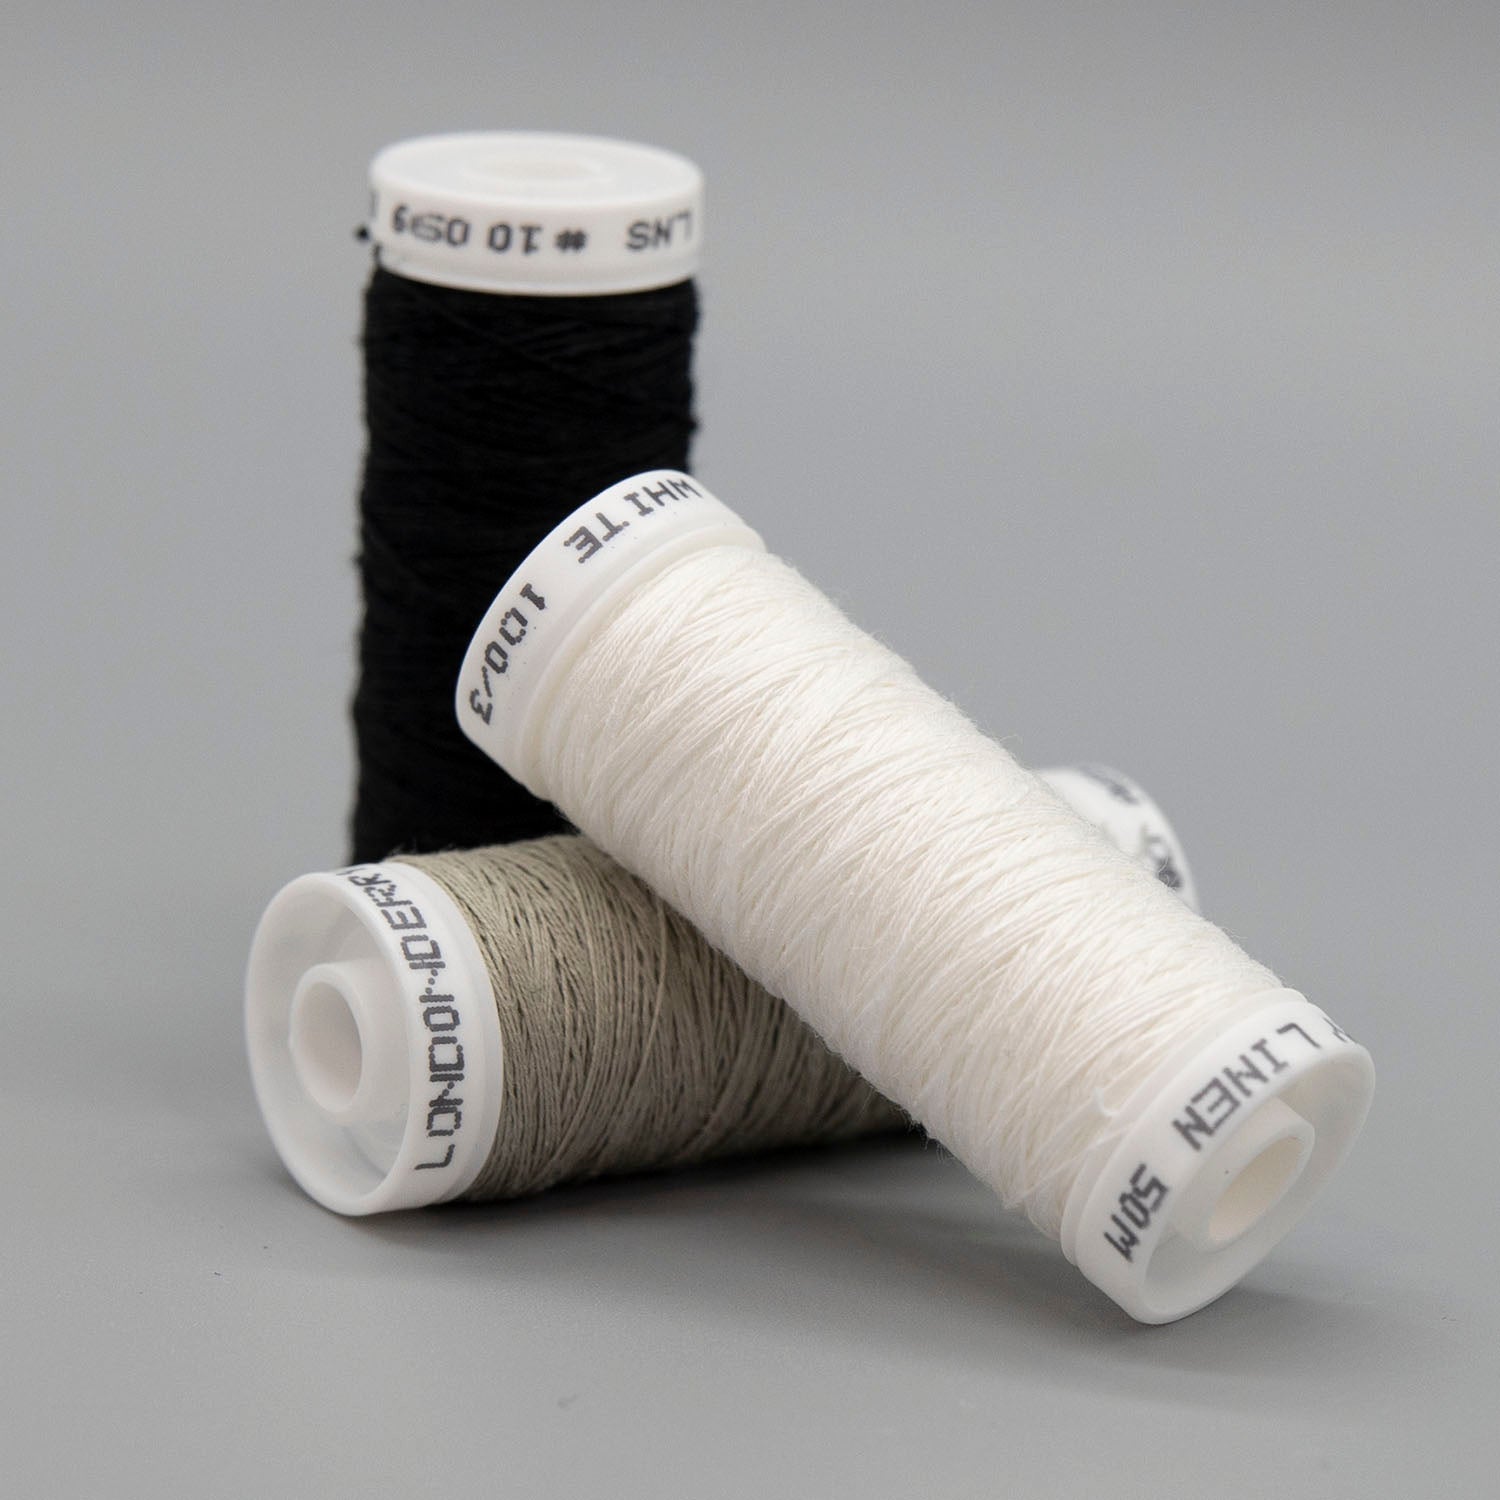 100/3 - Linen Thread  Burnley & Trowbridge Co.